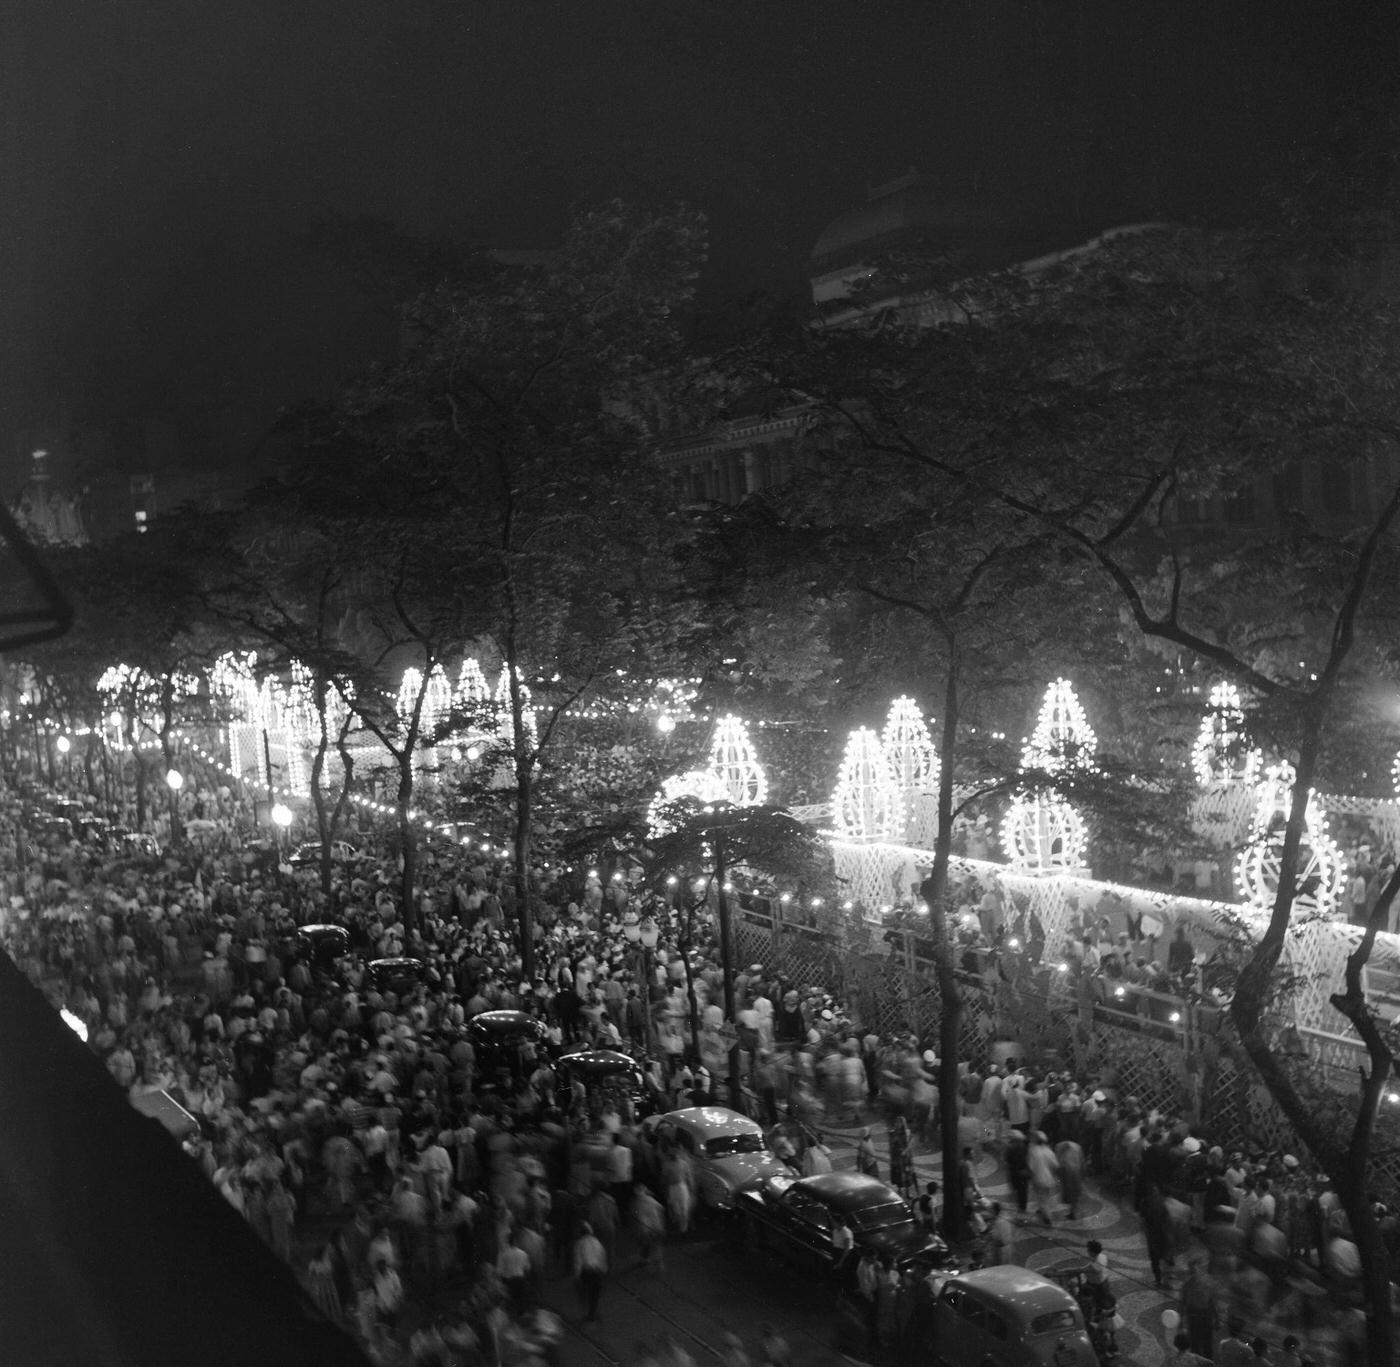 Nighttime Carnival Parade, Rio 1953